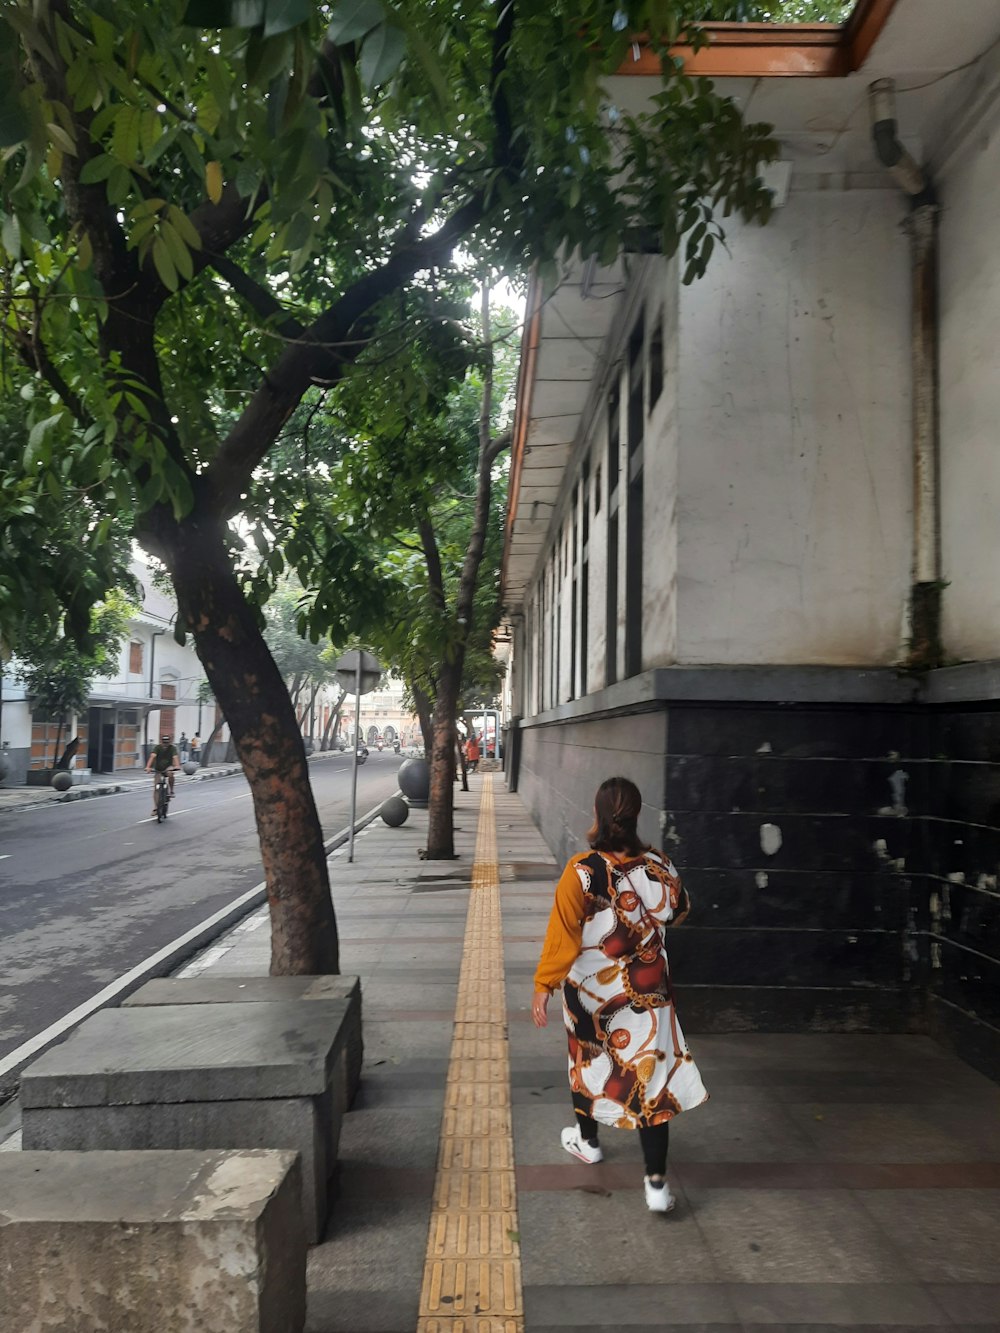 Eine Frau geht einen Bürgersteig neben einem Baum entlang